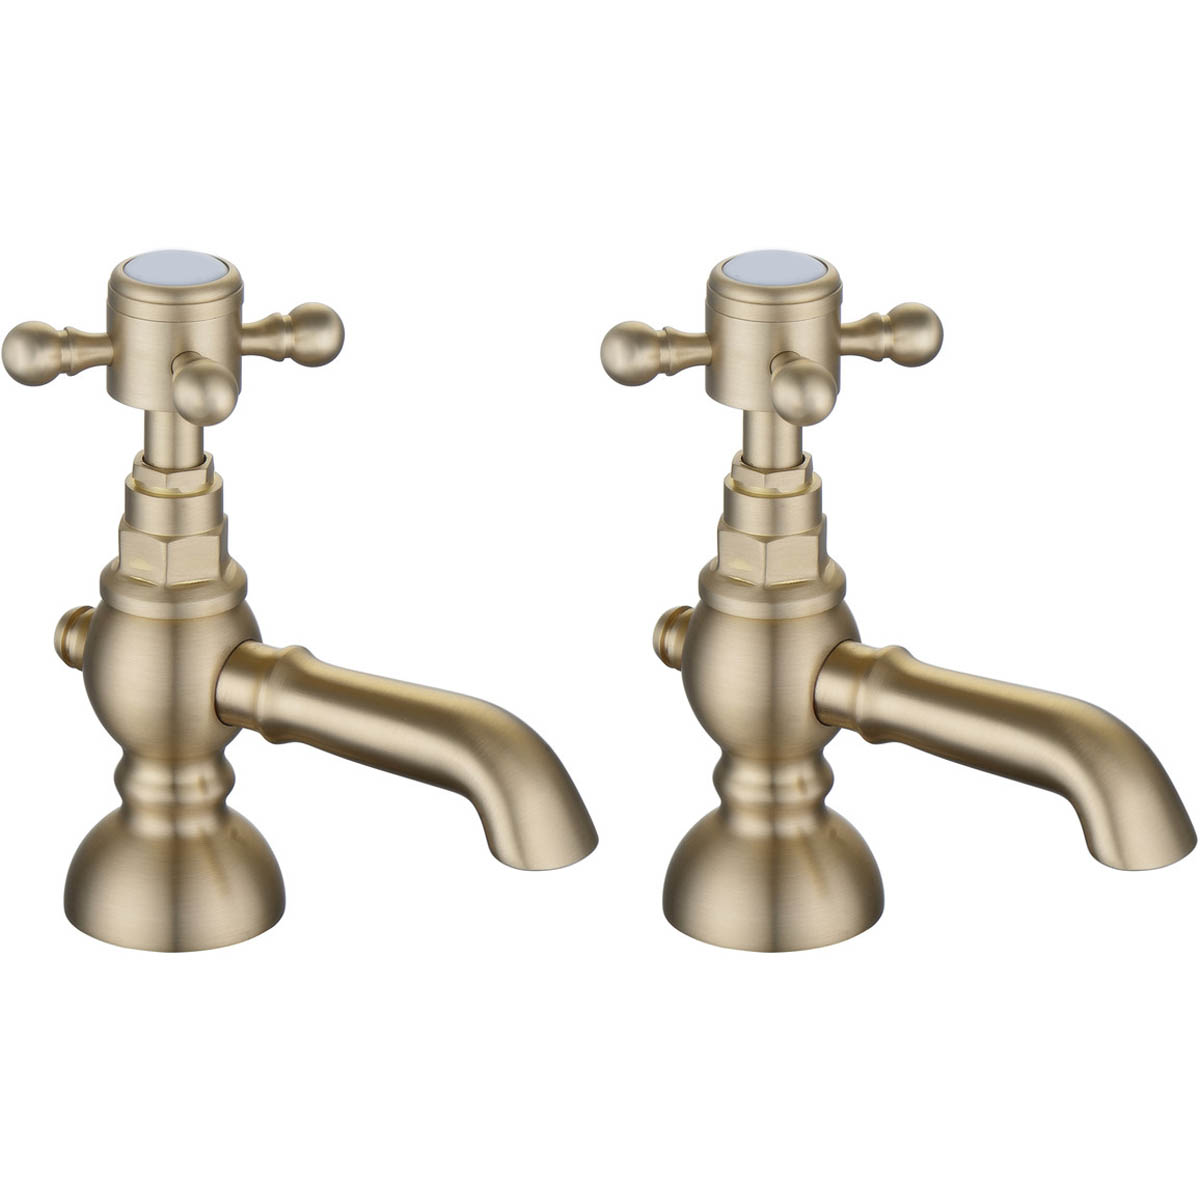 Ari Design Classique Basin Pillar Taps - Brushed Brass